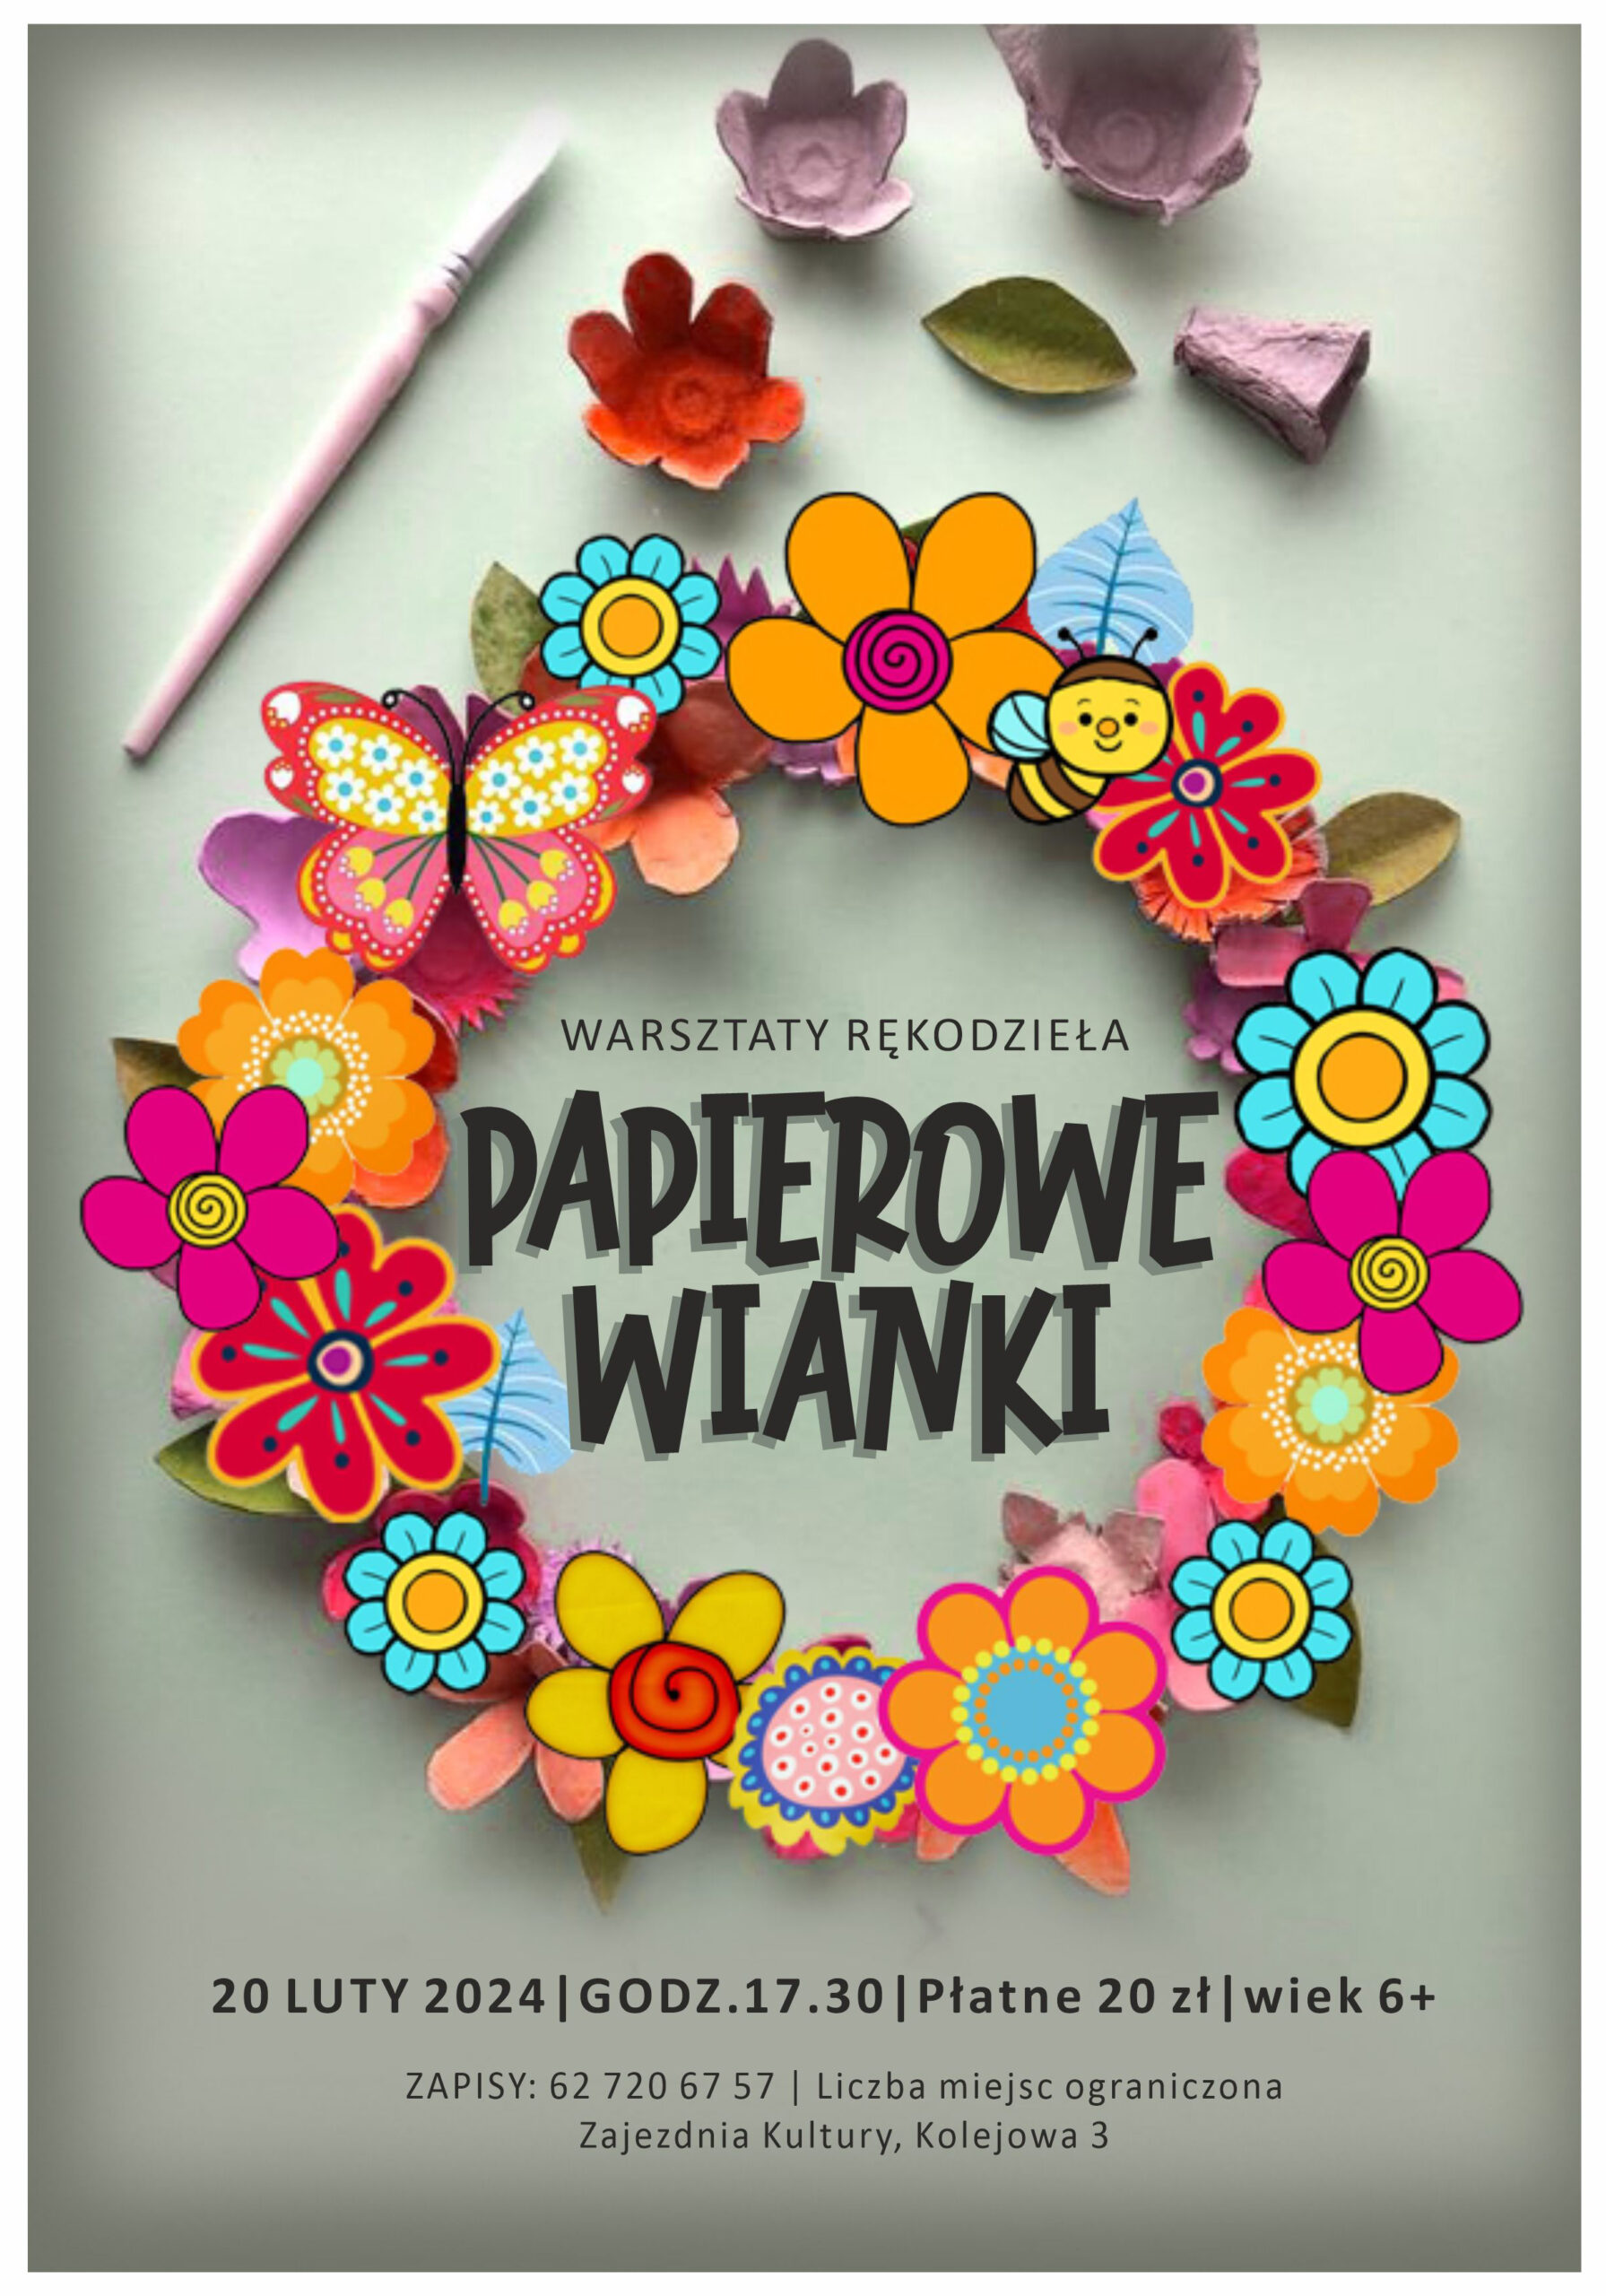 Plakat warsztatów rękodzieła organizowanych w Zajezdni Kultury w Pleszewie 20 lutego 2024 roku o godzinie 17:30.